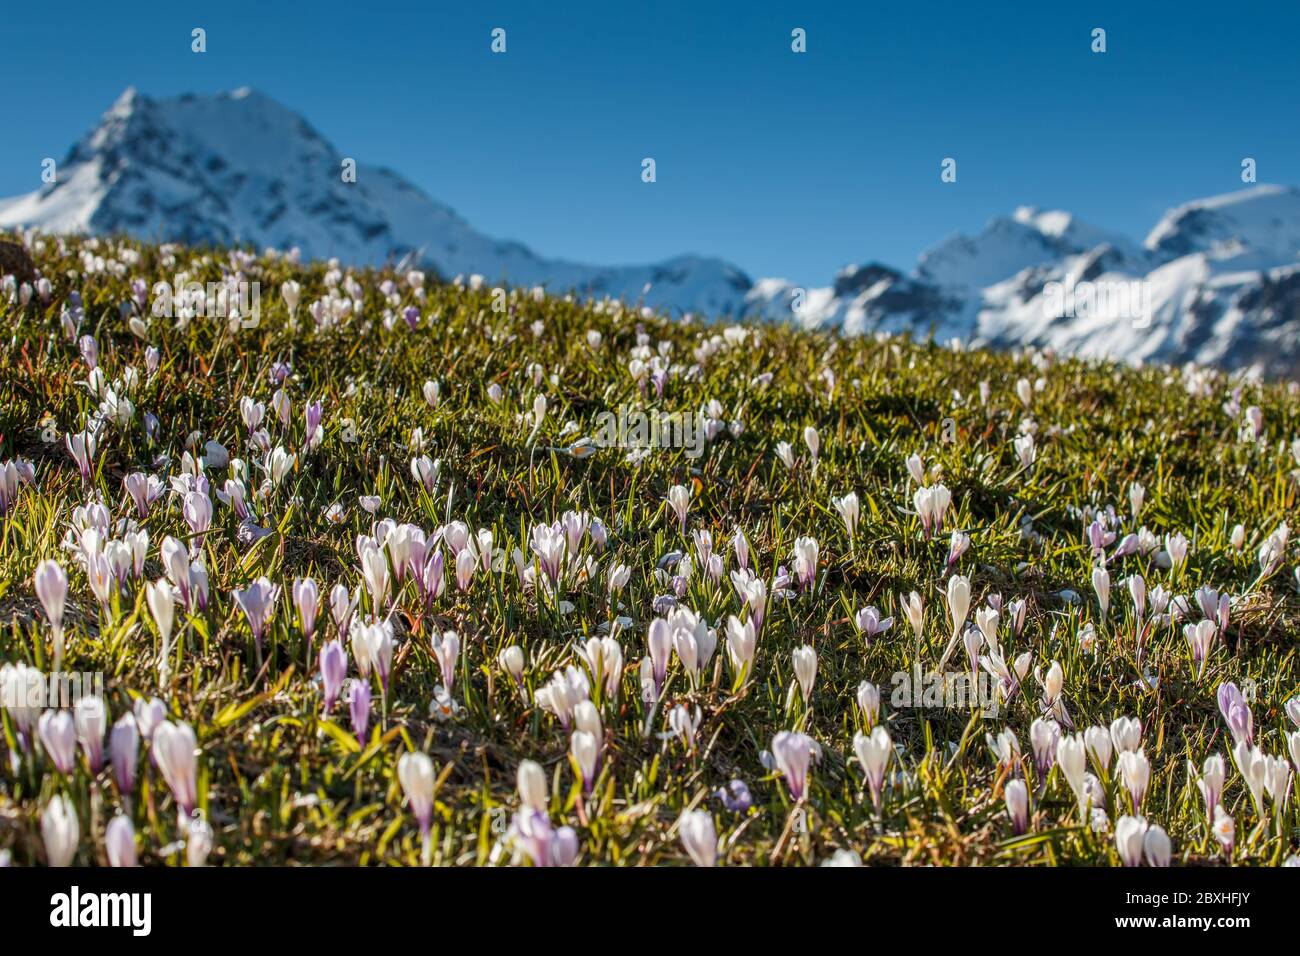 Blühende Krokusse vor schneebedeckten Bergen Stock Photo